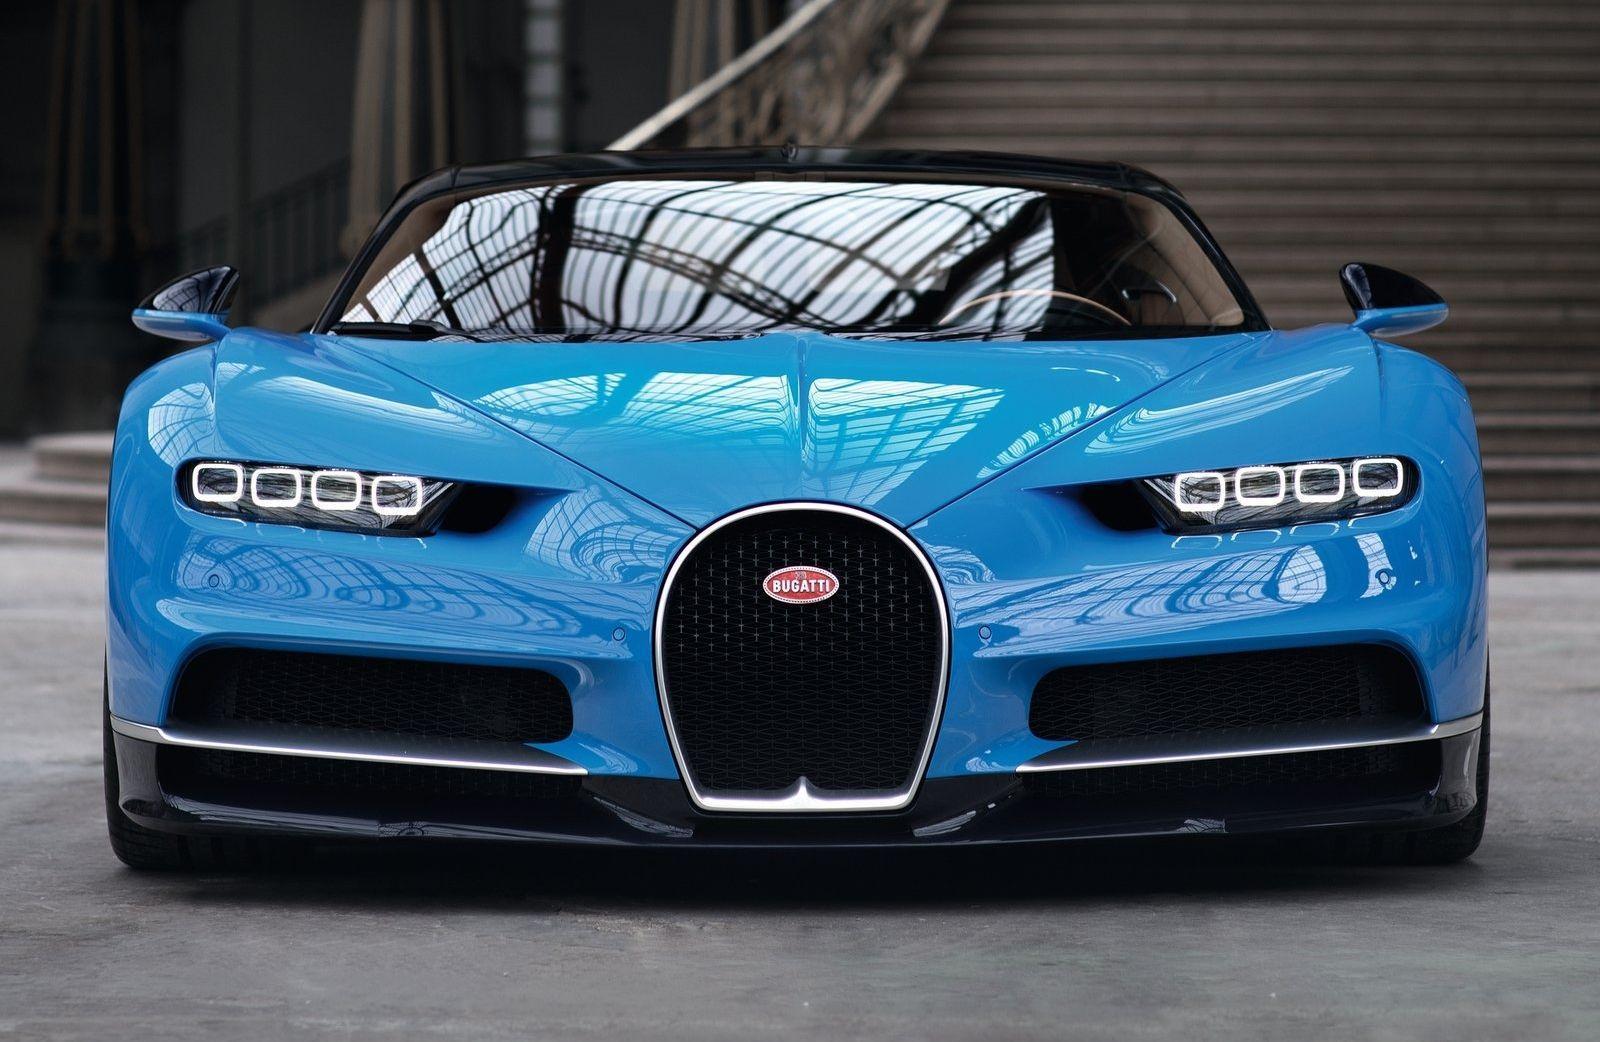 Bugatti Chiron Wallpaper Image Photo Picture Background